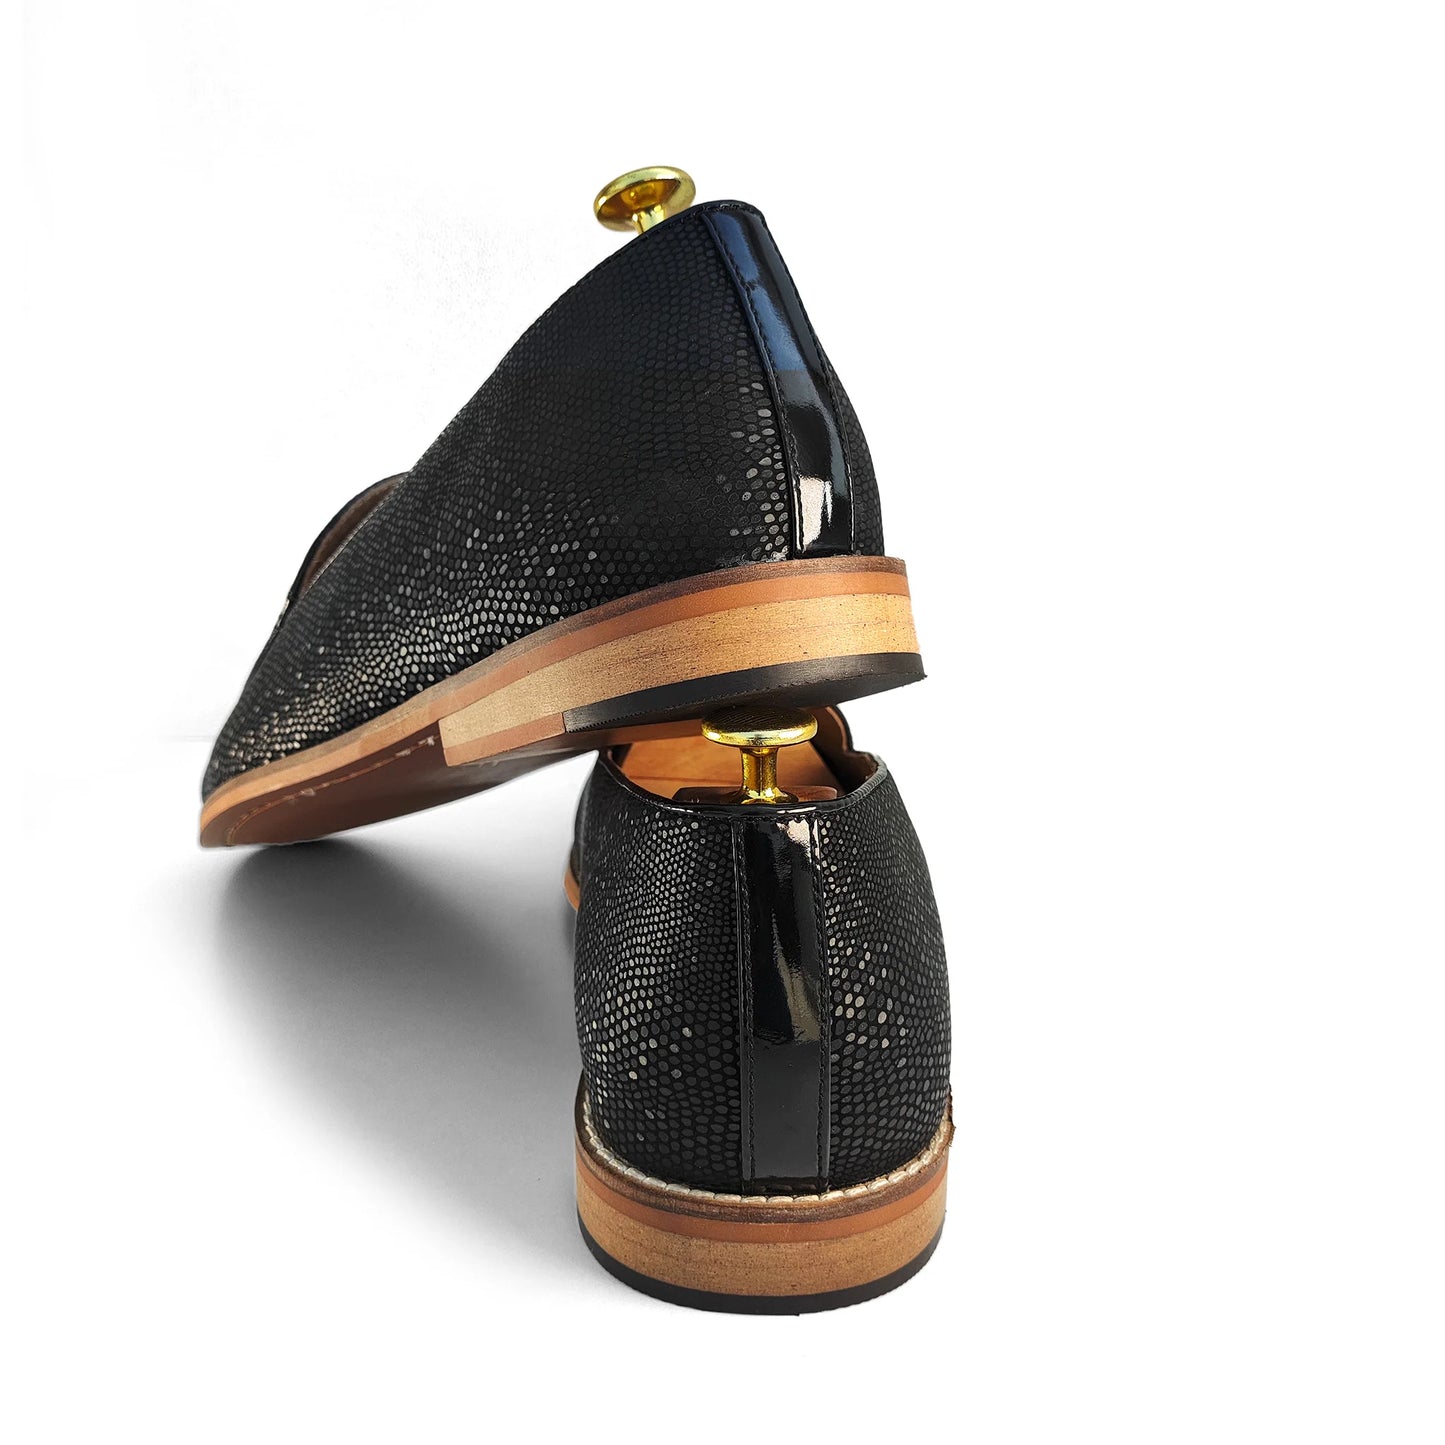 Black Snake Print and Velvet Tassle Ethnic Wedding Shoes Loafer Slipon for Men